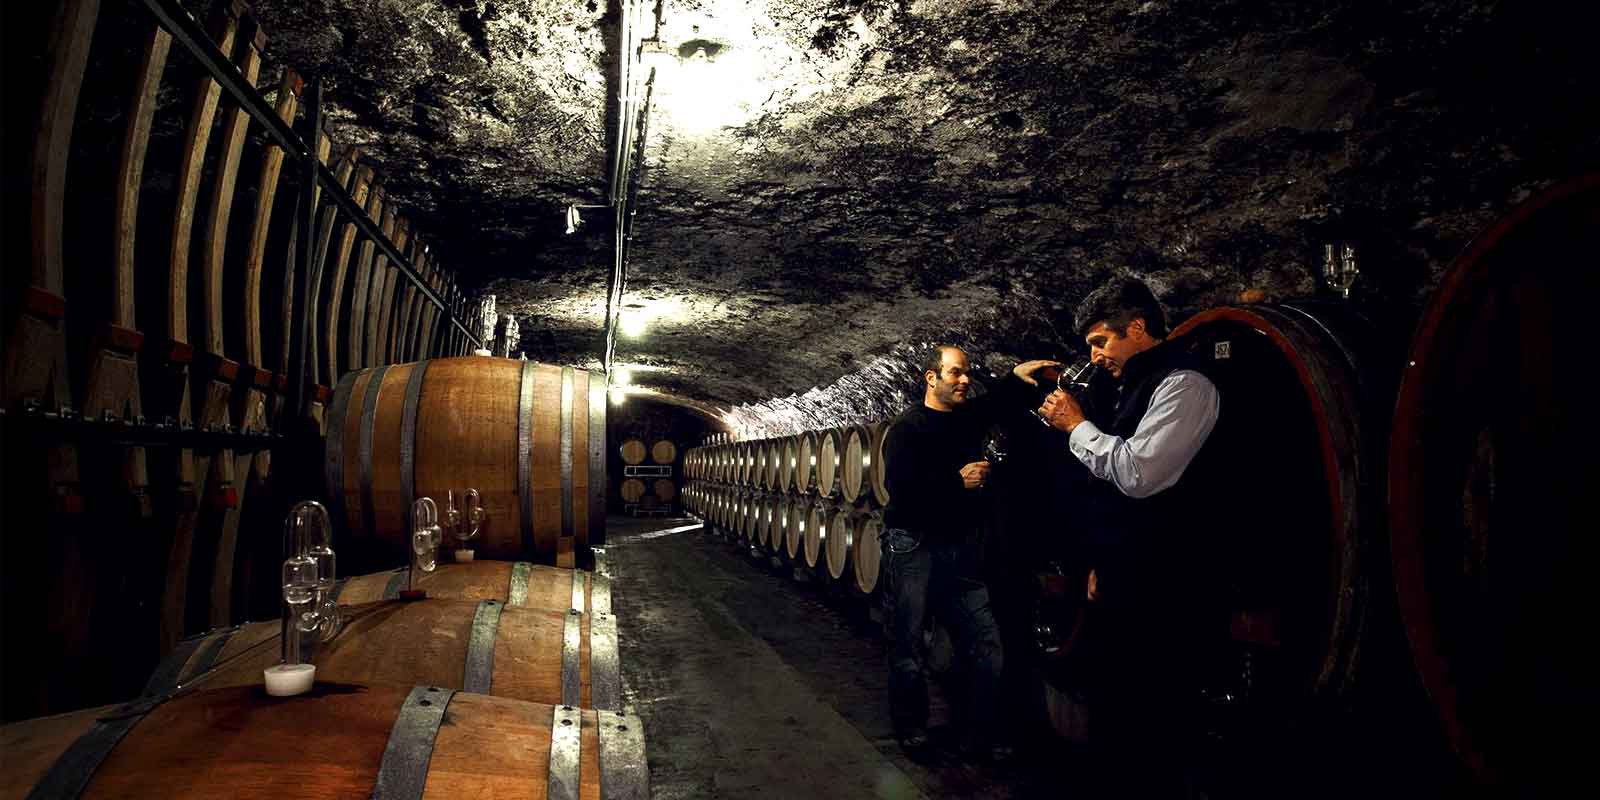 Weingut Kunstler - regiunea viticola Rheingau Nu valorile analitice determina calitatea, ci gustul strugurilor, aroma mustului si, mai ales, armonia vinurilor.